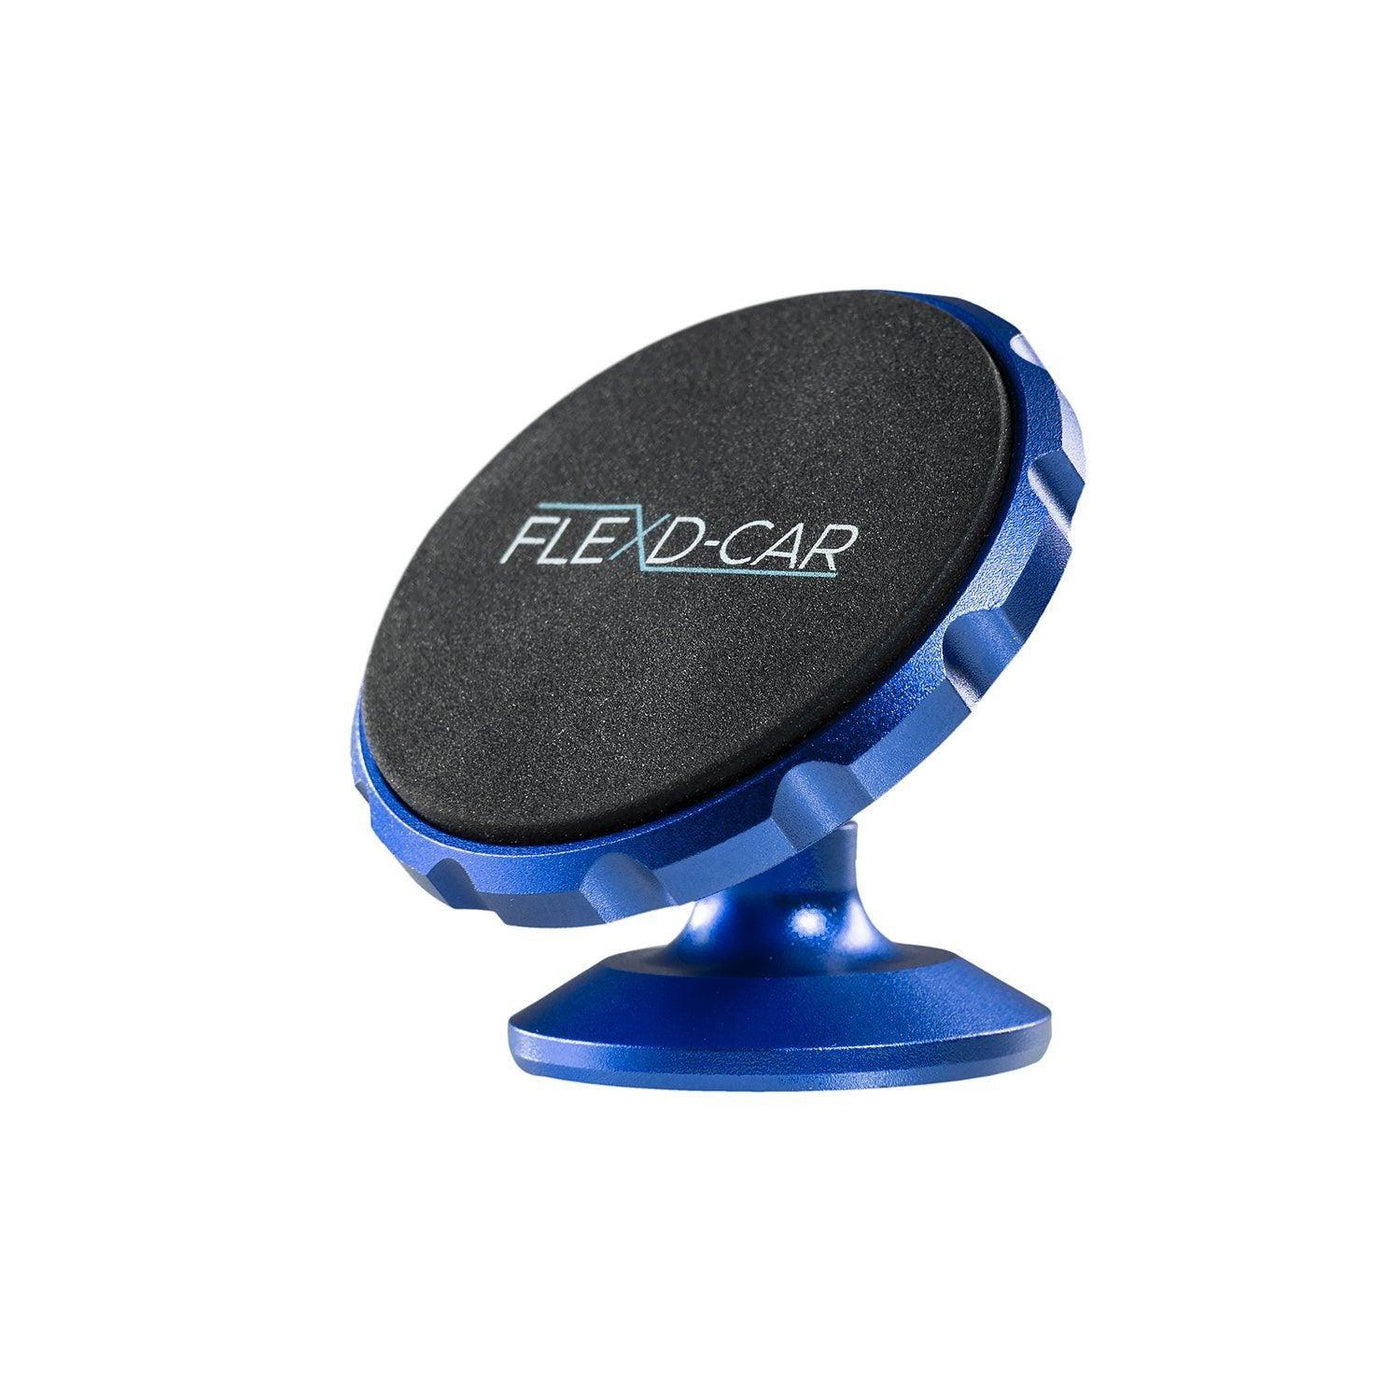 FLEXD-Car Auto Handyhalterung Smartphone Flexd-x Blau 